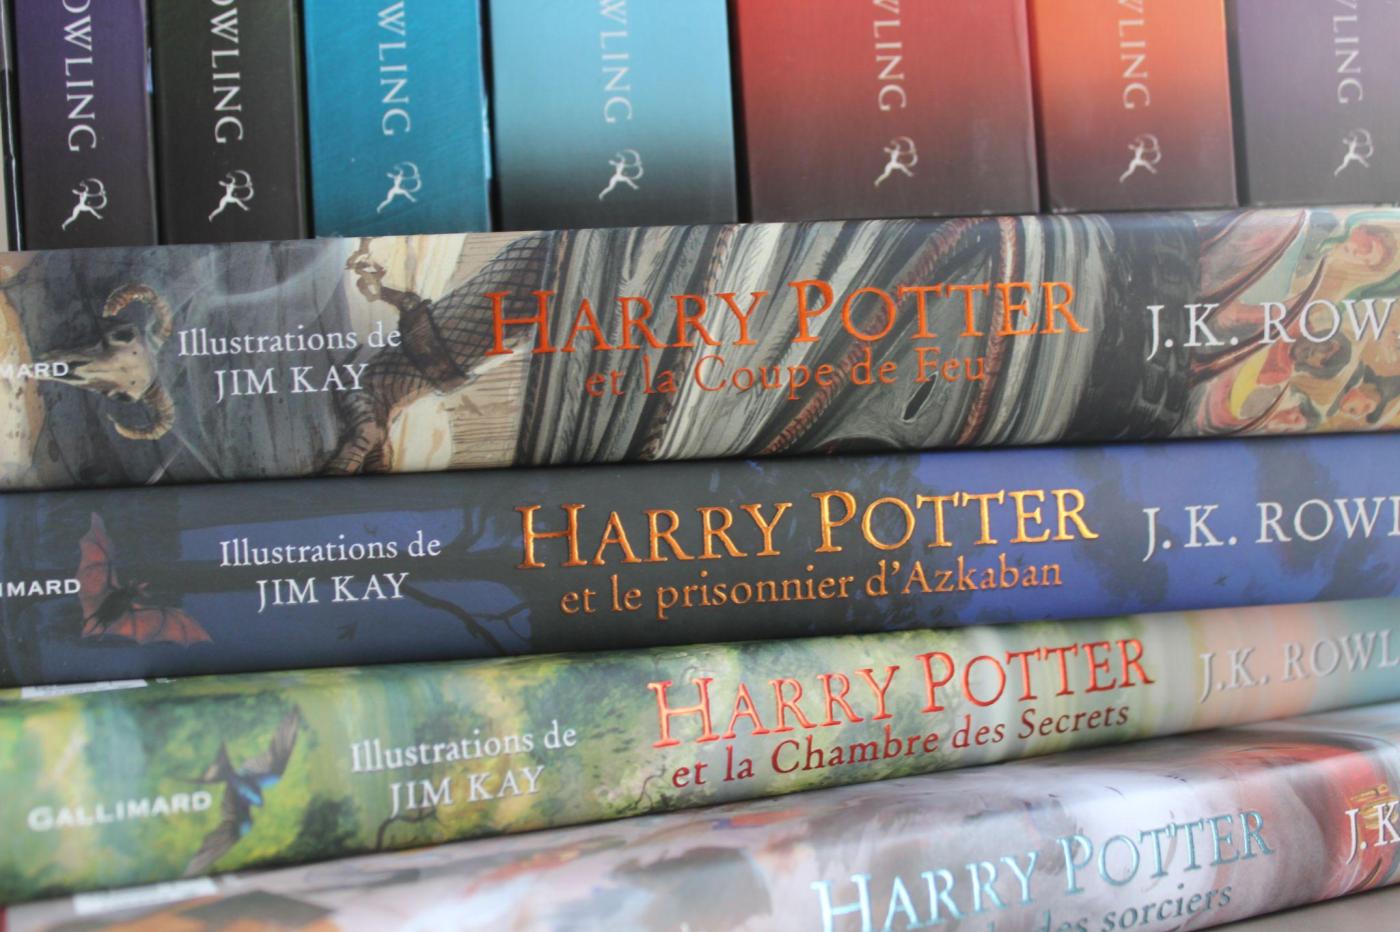 Harry Potter a 20 ans au cinéma : 5 éditions exceptionnelles pour